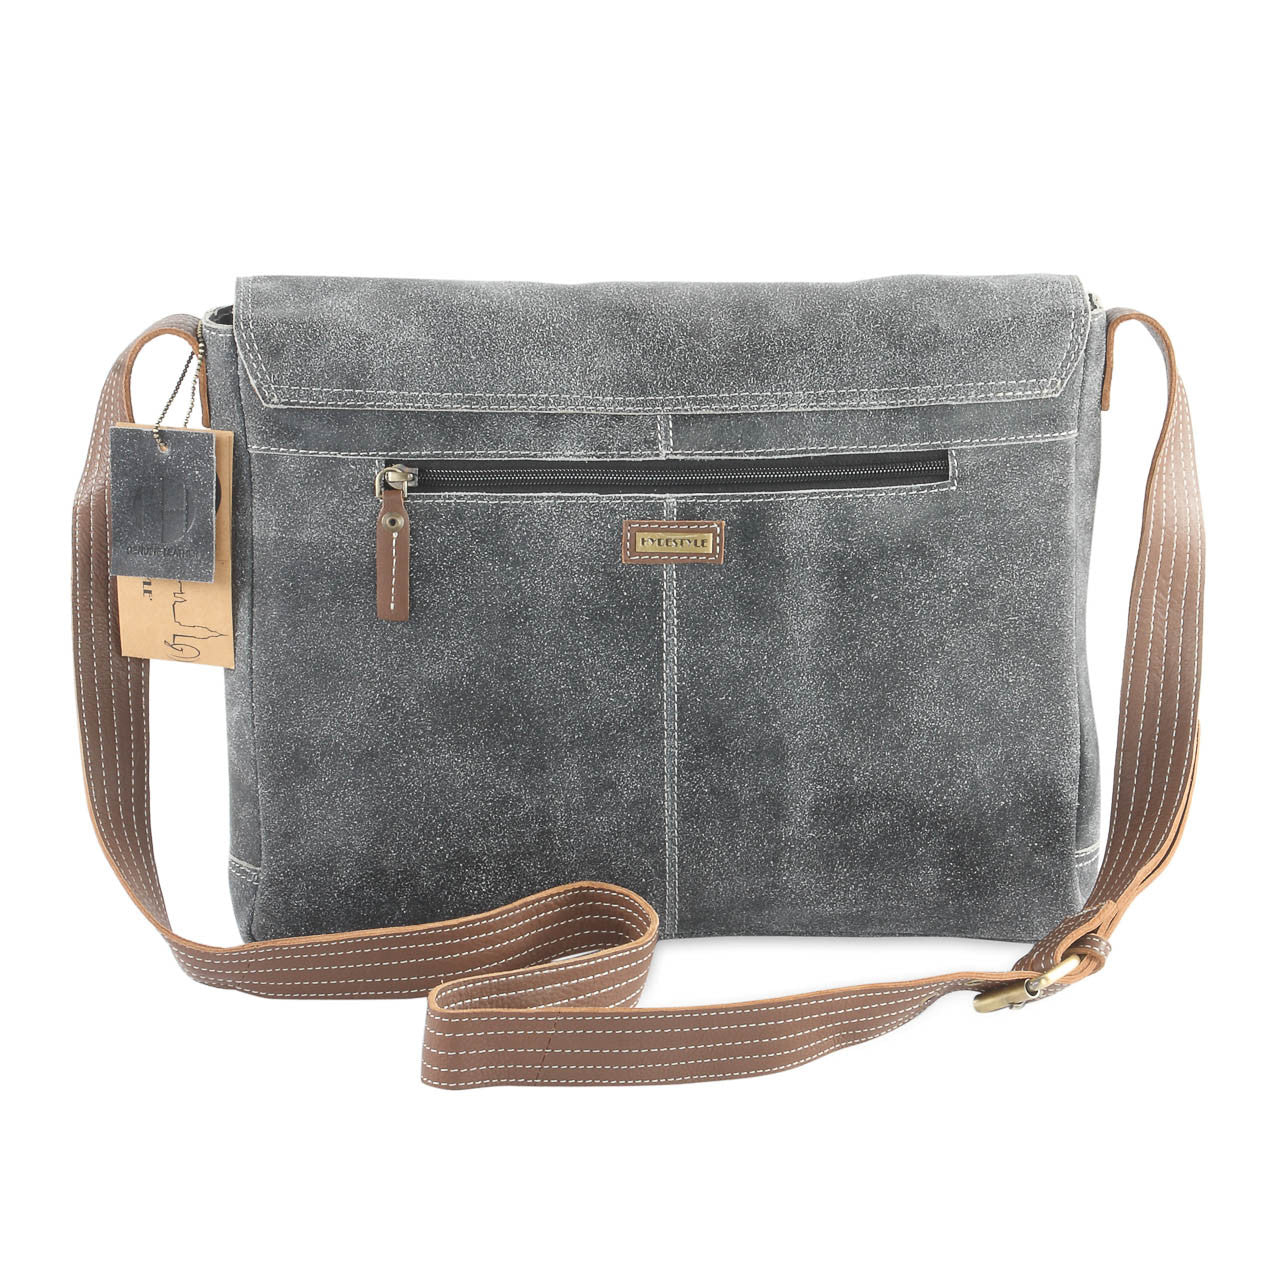 Crackle genuine leather a4 satchel messenger bag #UM44 black